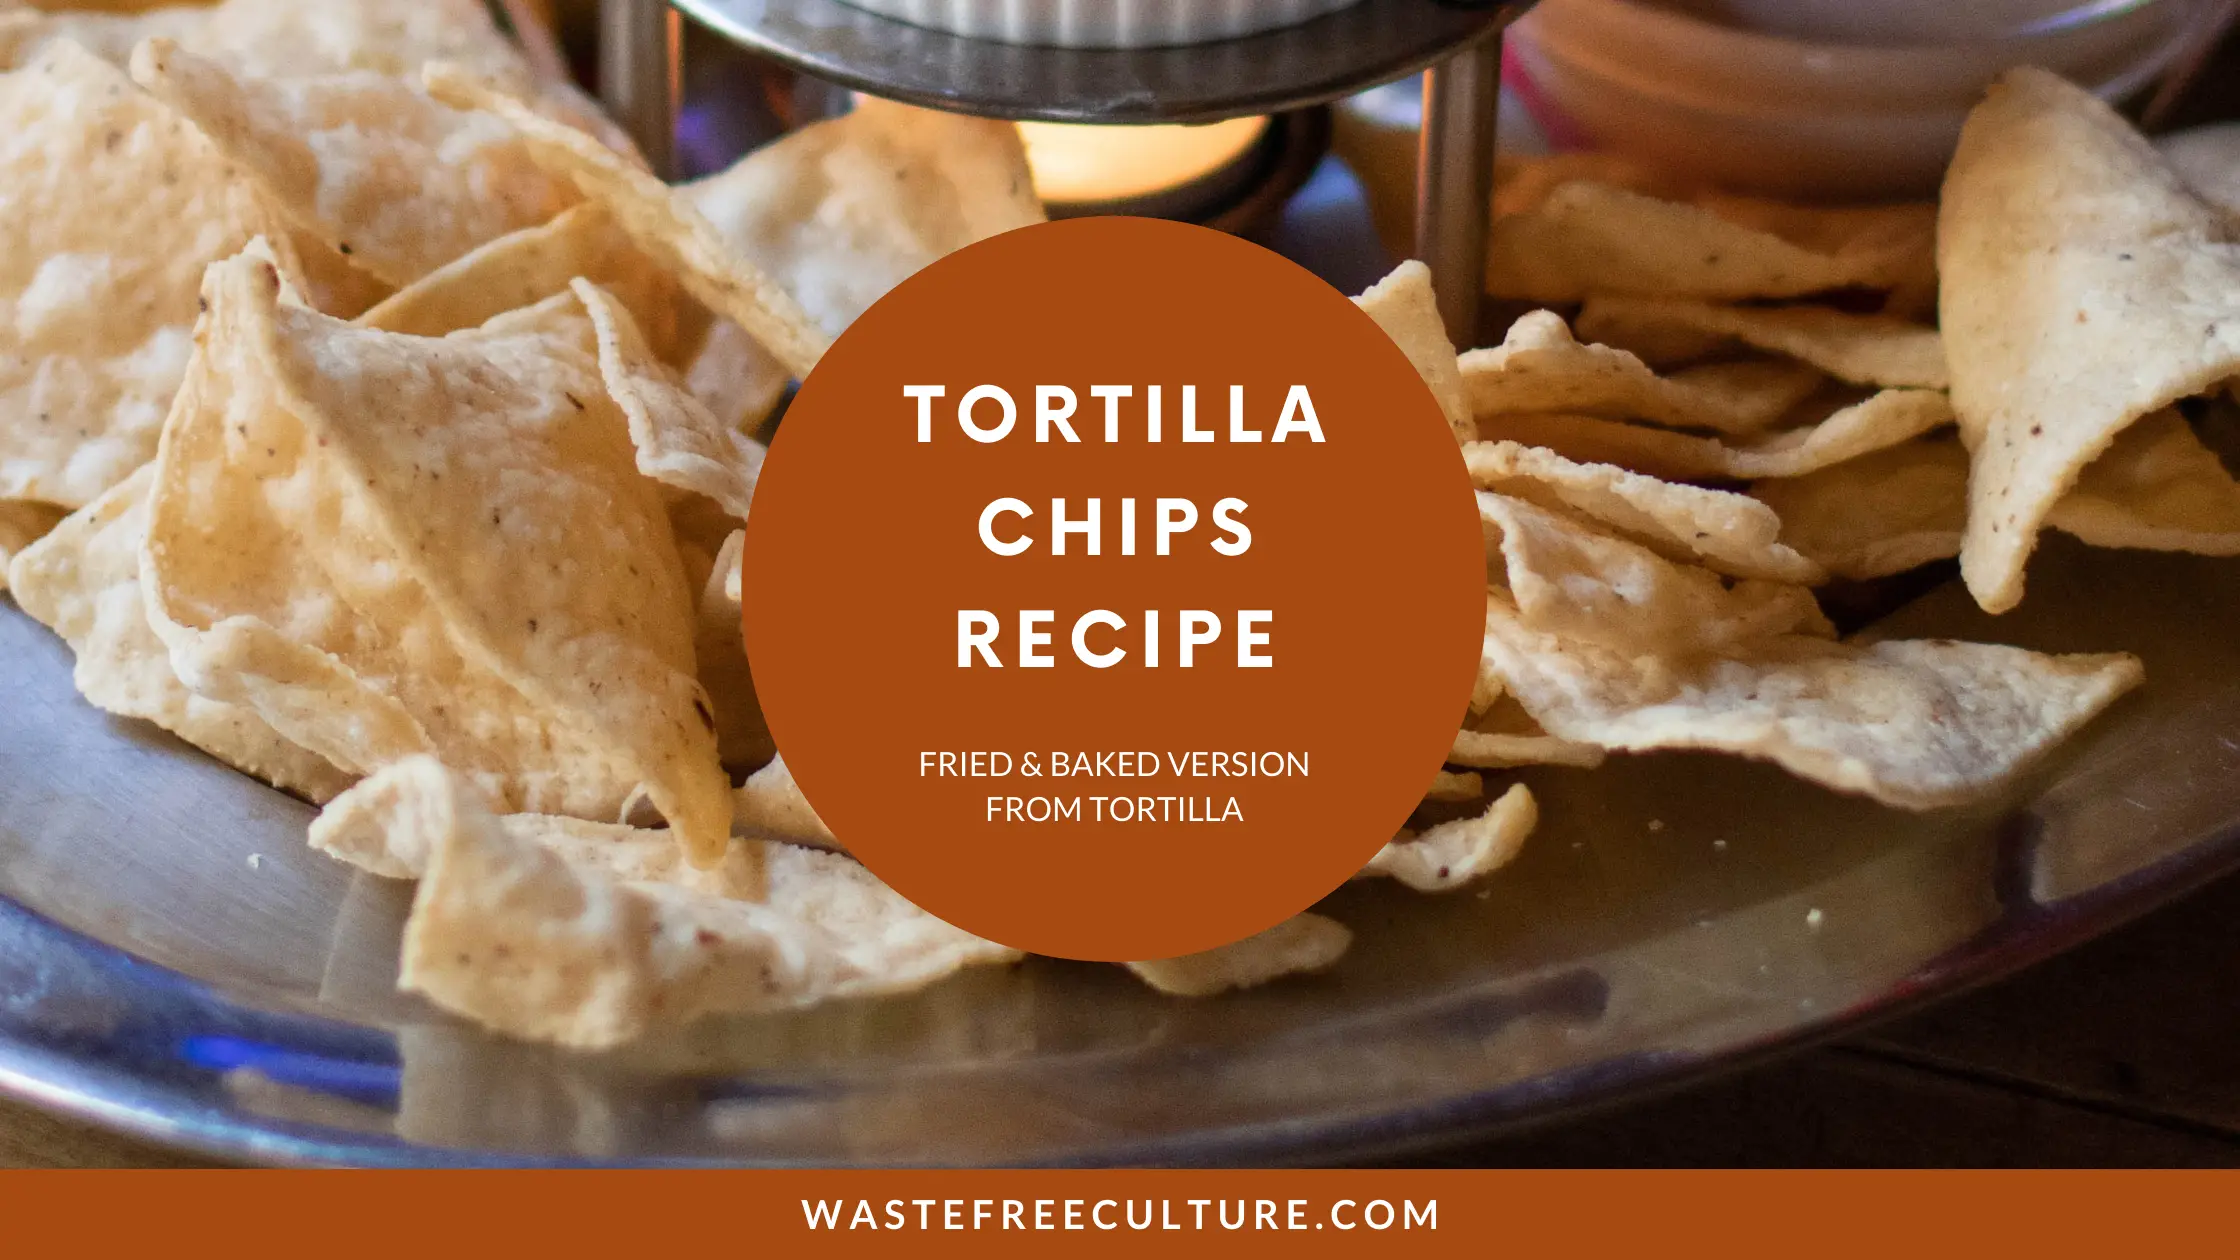 Tortilla-chips-recipe–Fried-&-Baked-version-from-Tortilla